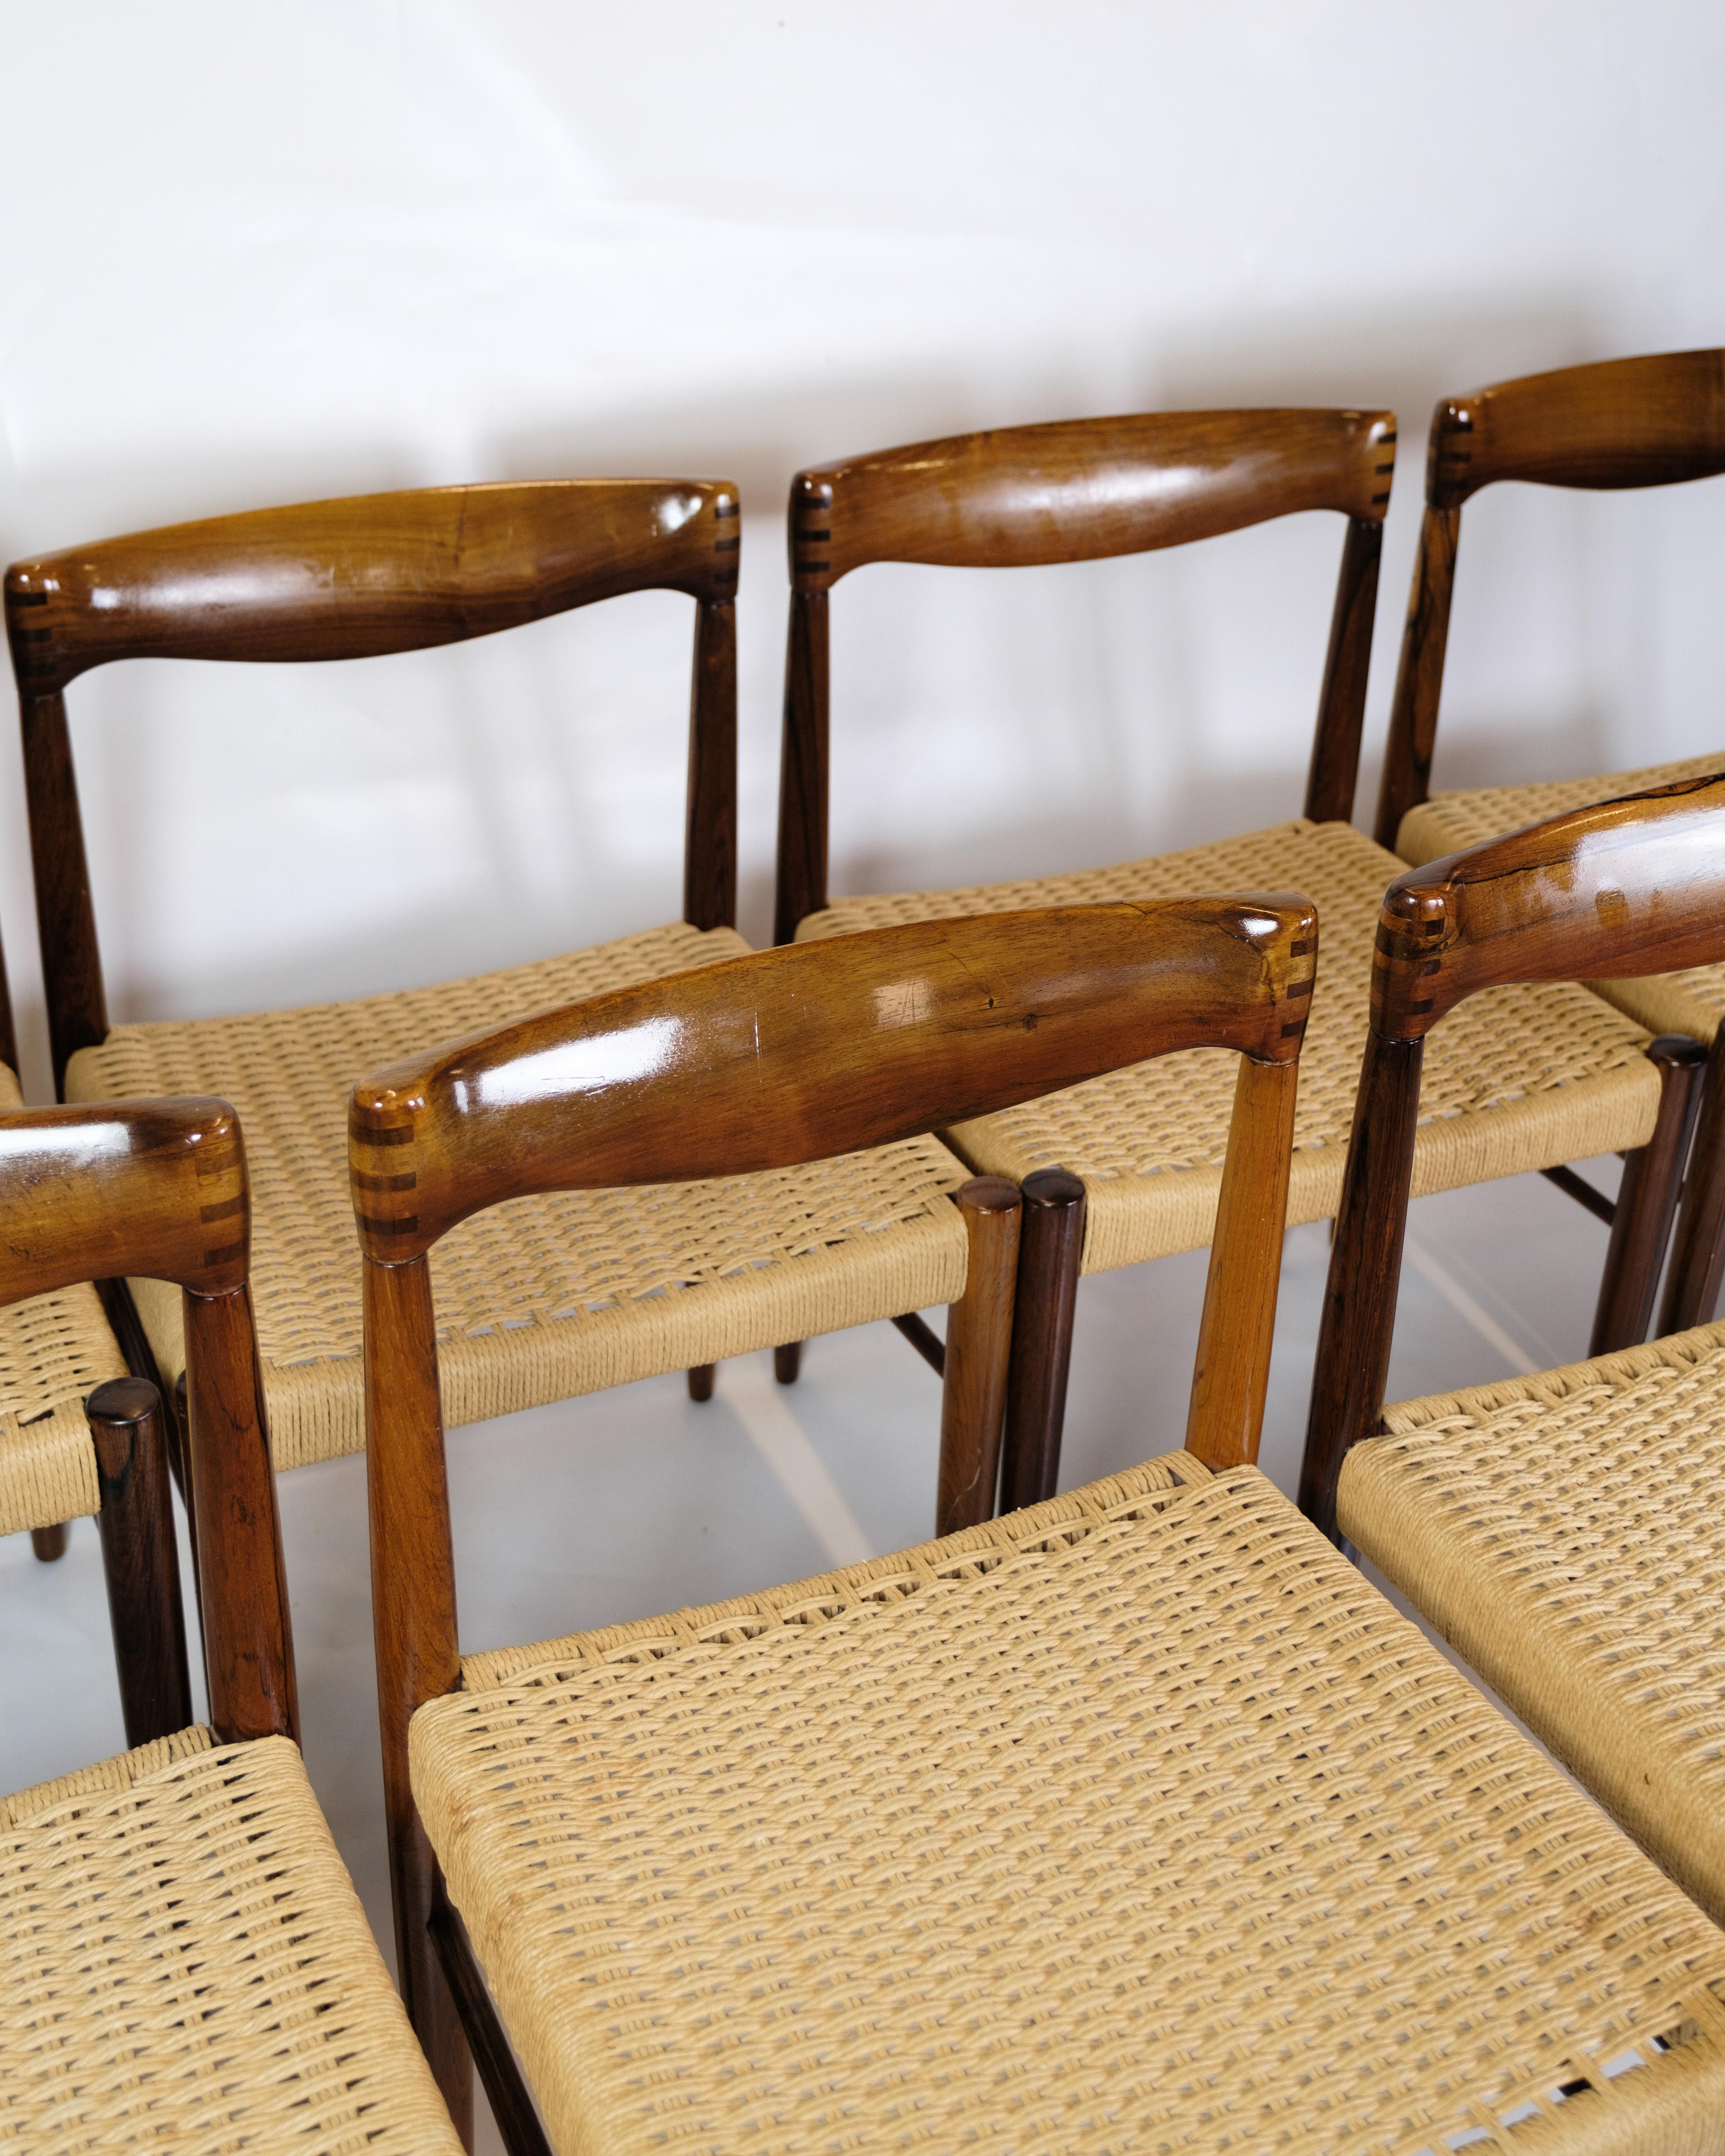 Cet ensemble de huit chaises de table de salle à manger est un splendide exemple de l'art mobilier danois des années 1960, conçu par Henry W. Klein et produit par Bramin. Les chaises sont fabriquées en bois de rose et ornées d'assises plates en